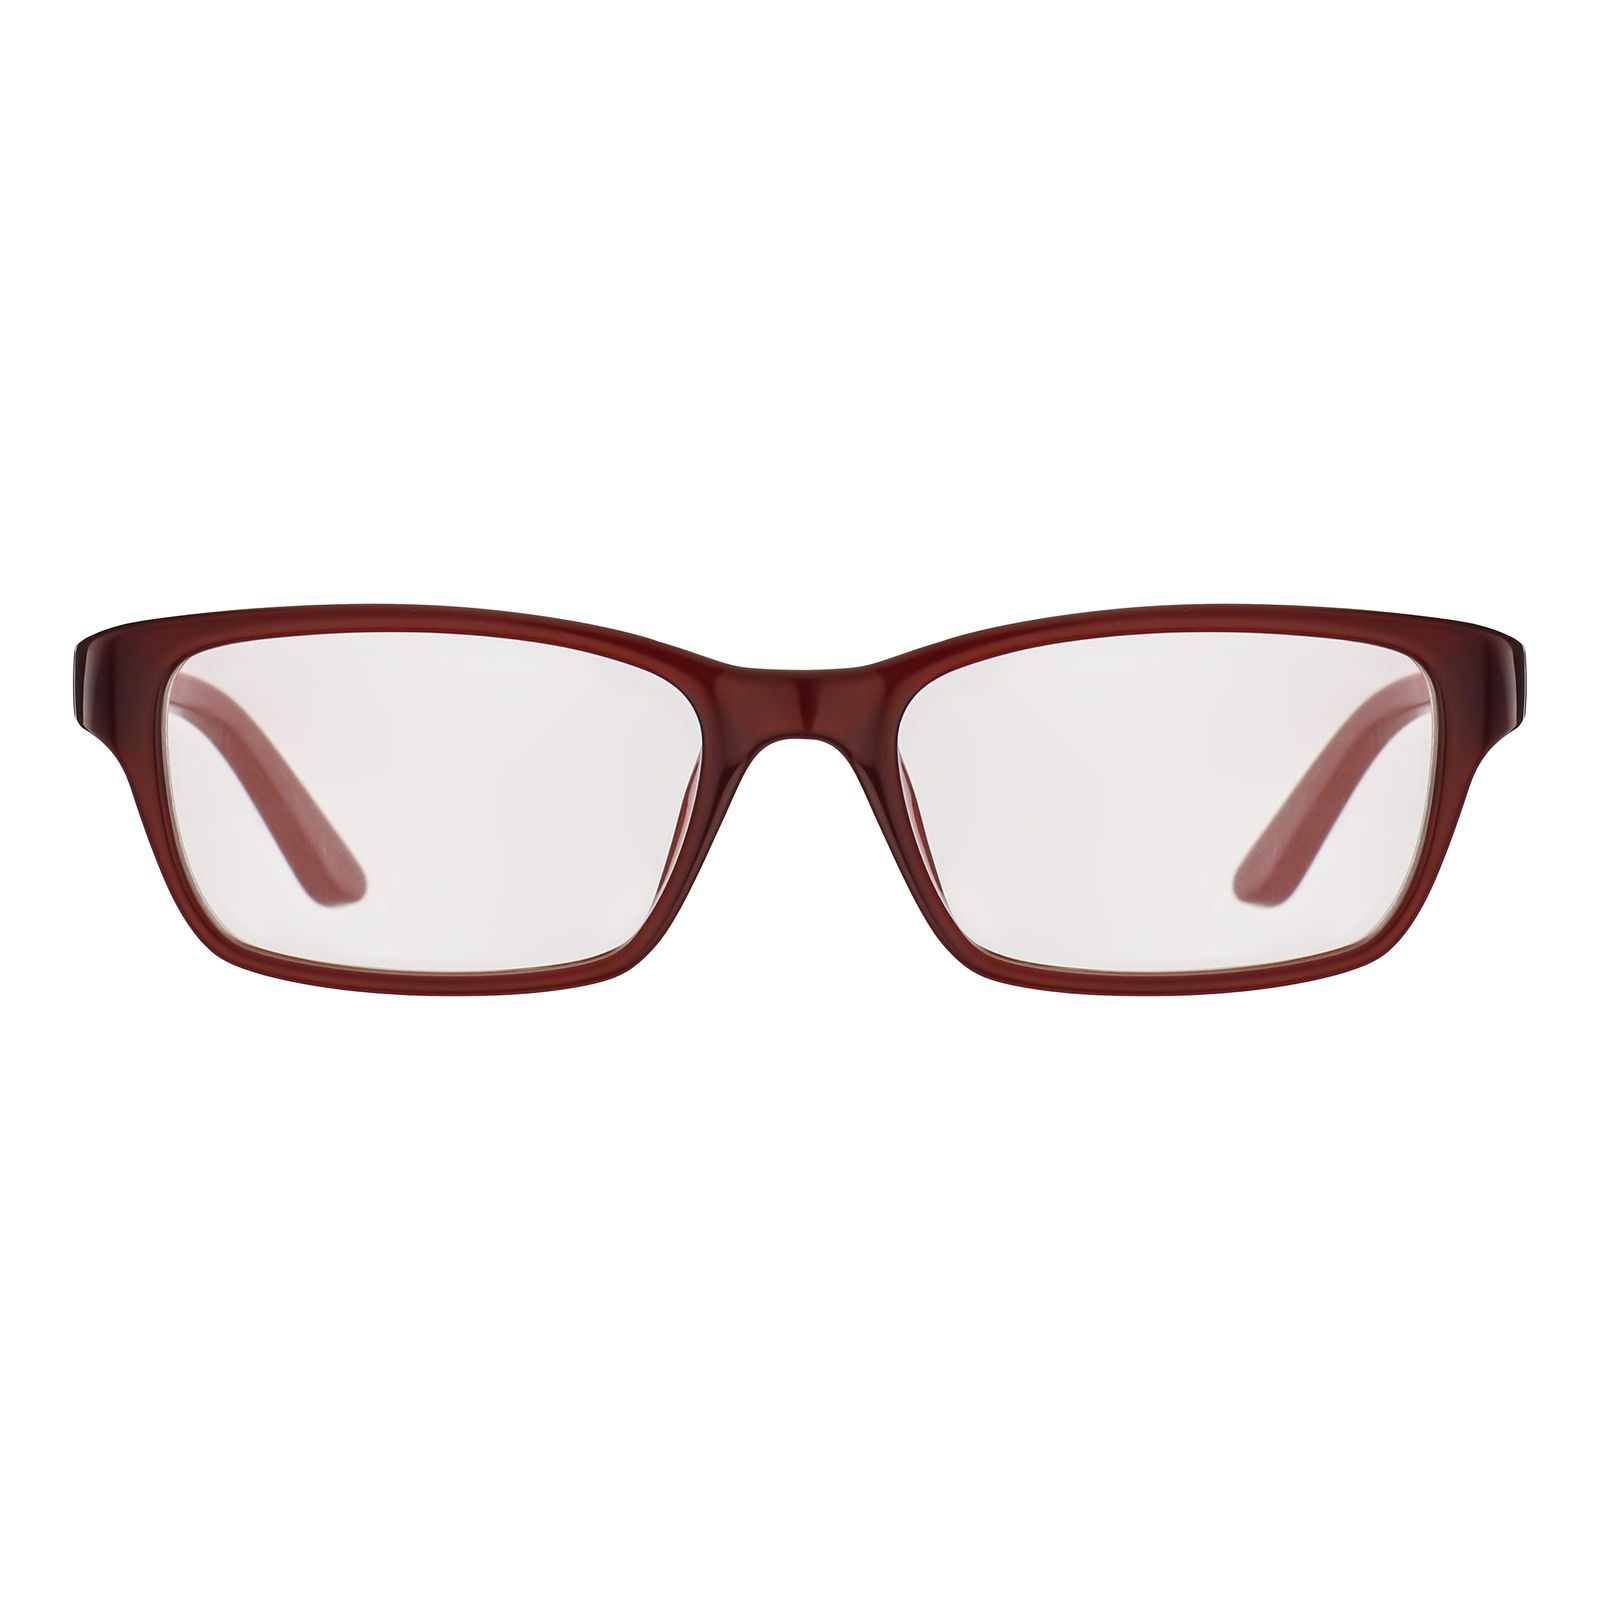 فریم عینک طبی کلوین کلاین مدل 5825-615 -  - 1